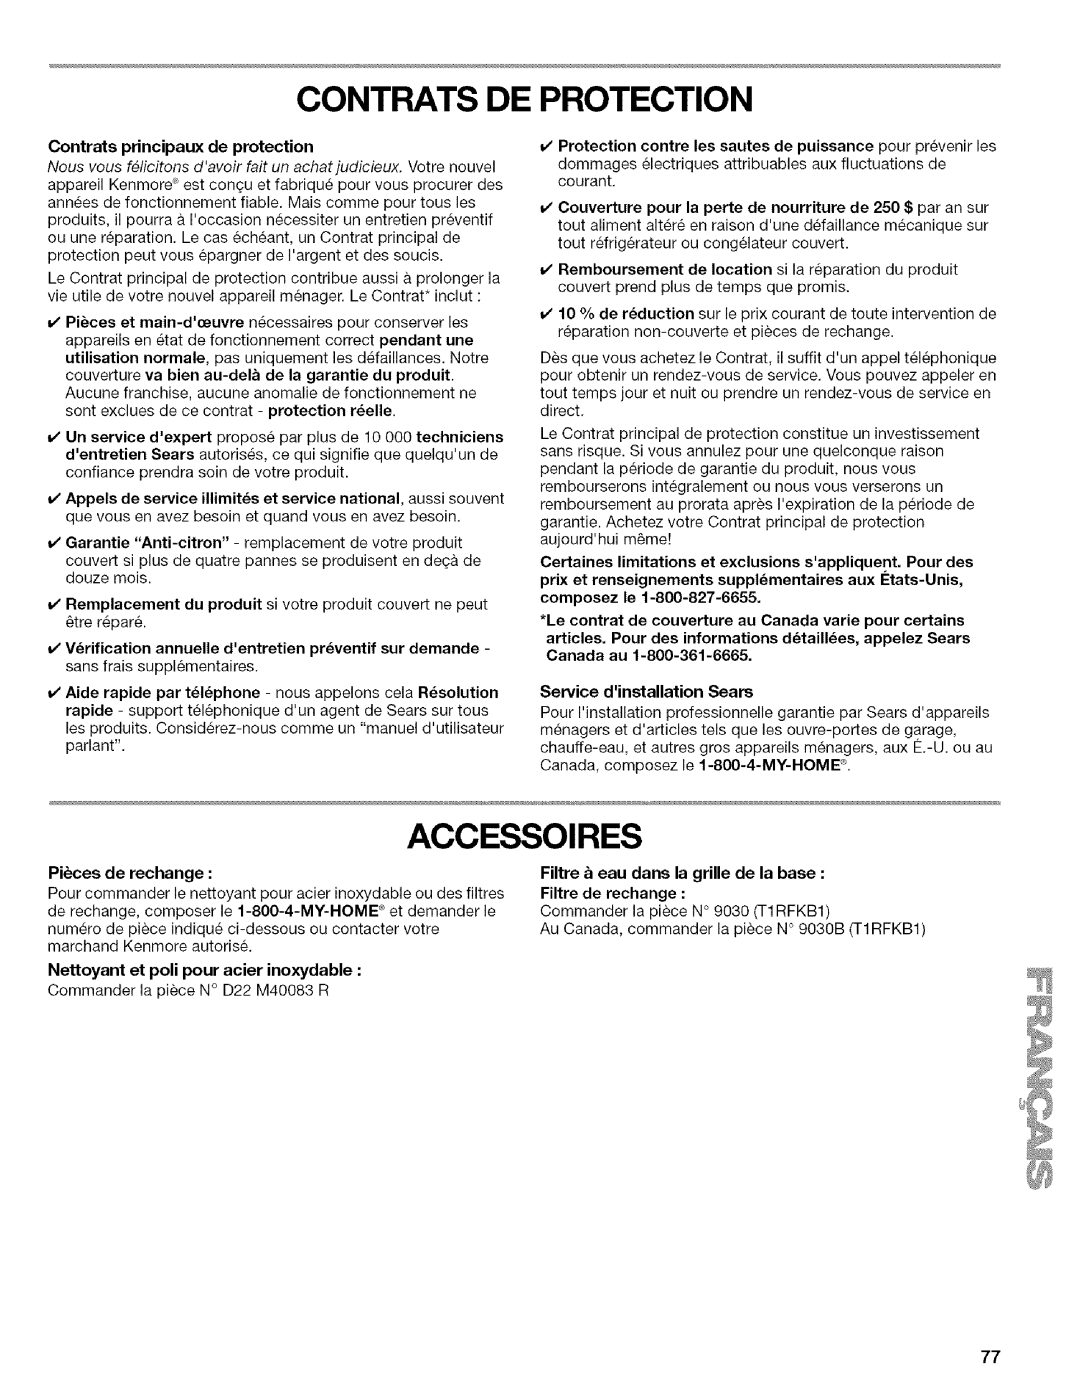 Kenmore WI0151336A manual Contrats De Protection, Accessoires, Nettoyant et poll pour acier inoxydable, Pi_ces de rechange 